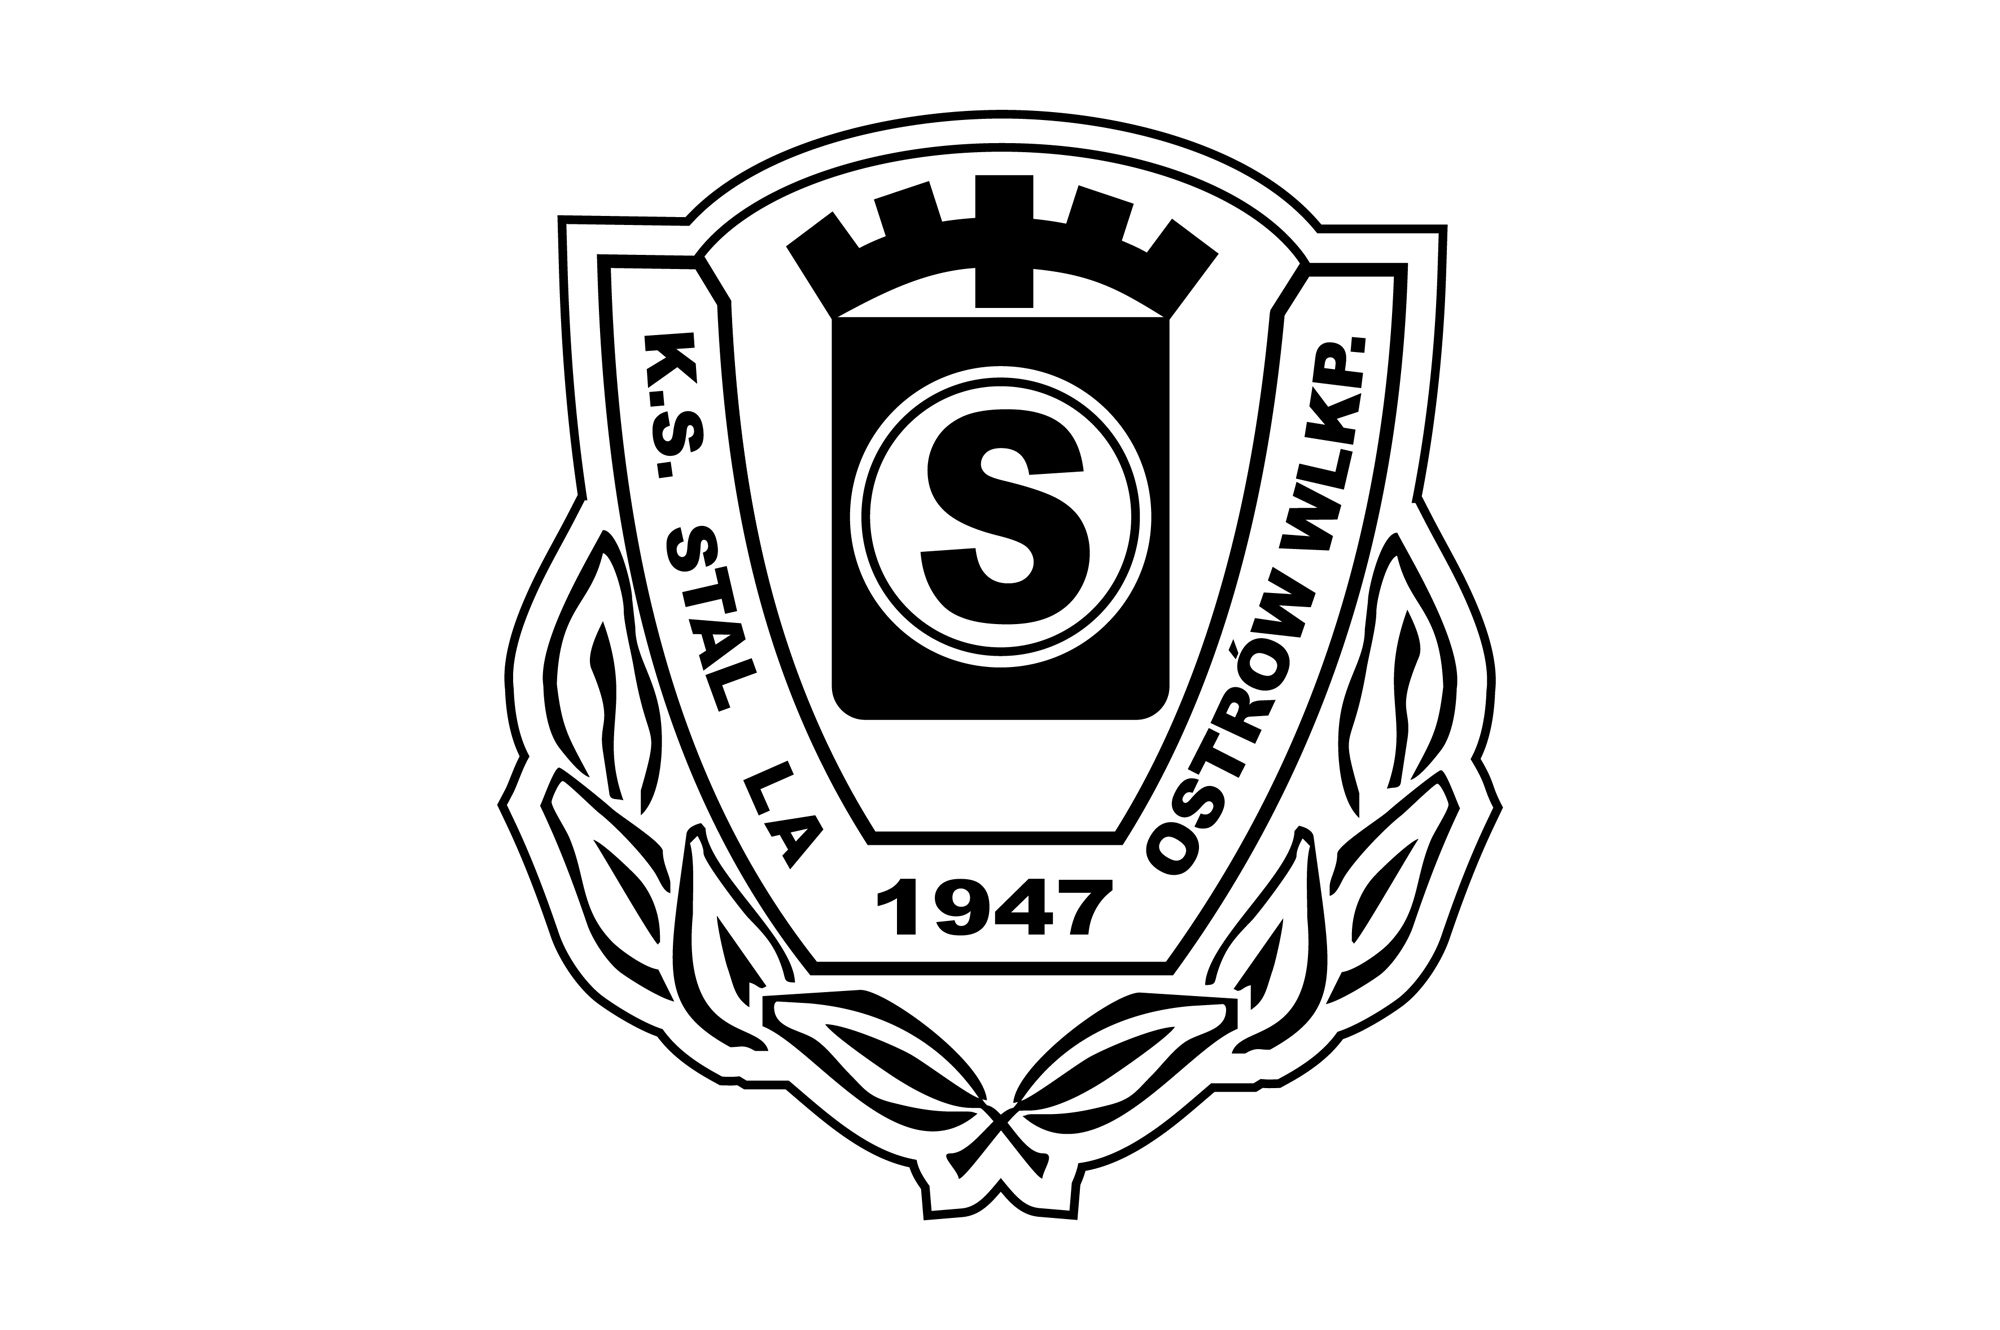 K.S. STAL Ostrów - logo PLANSZA 30x30cm EDYCJA